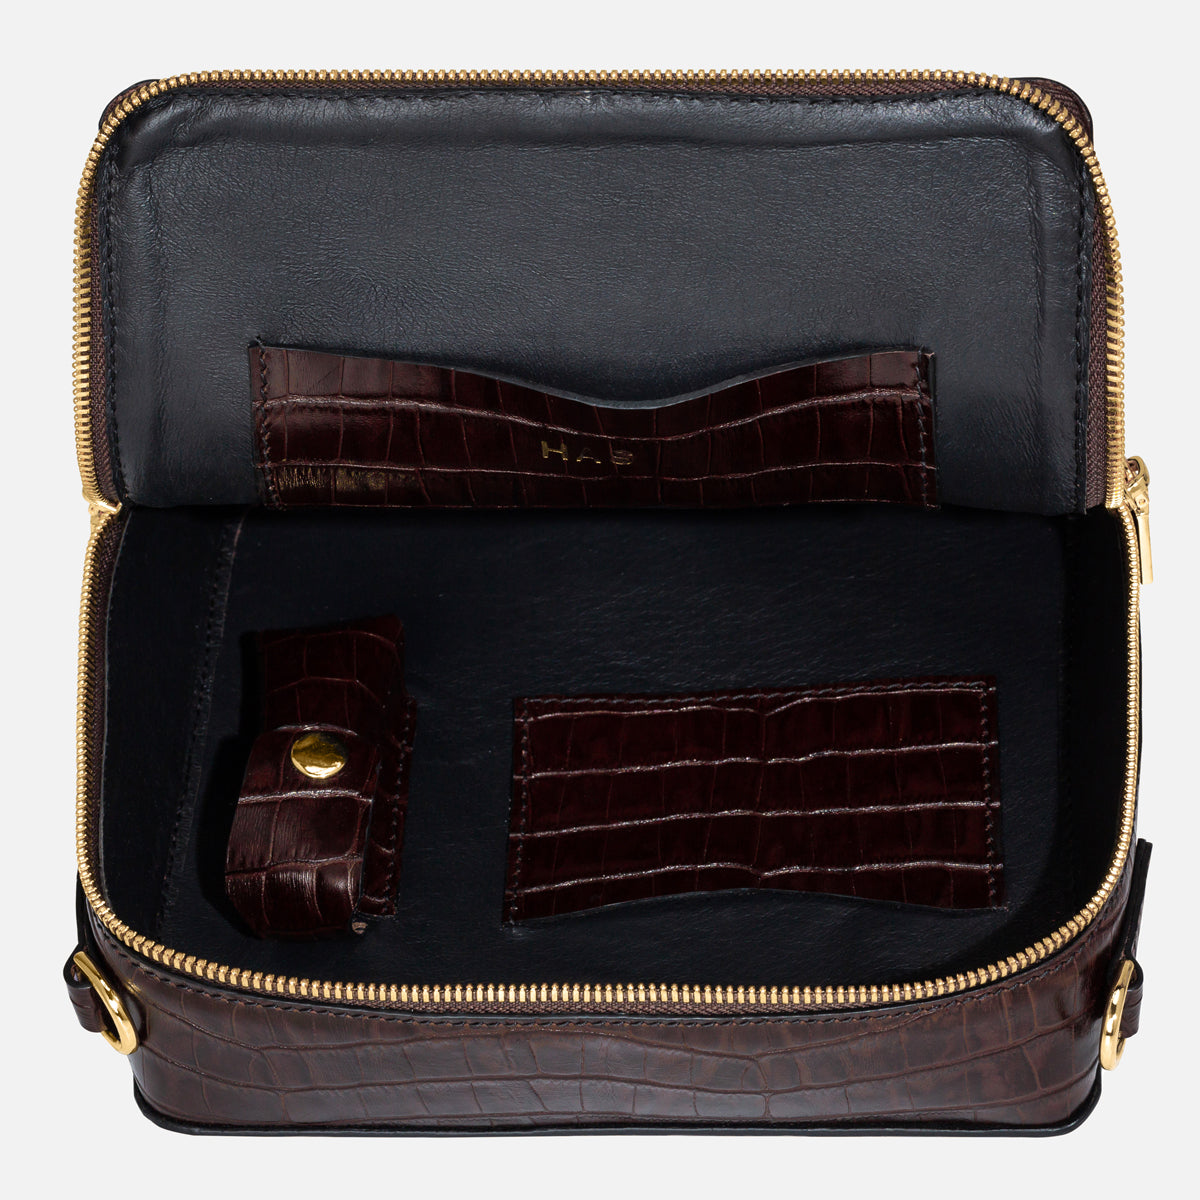 Maya Top Handle Bag - Dark Brown